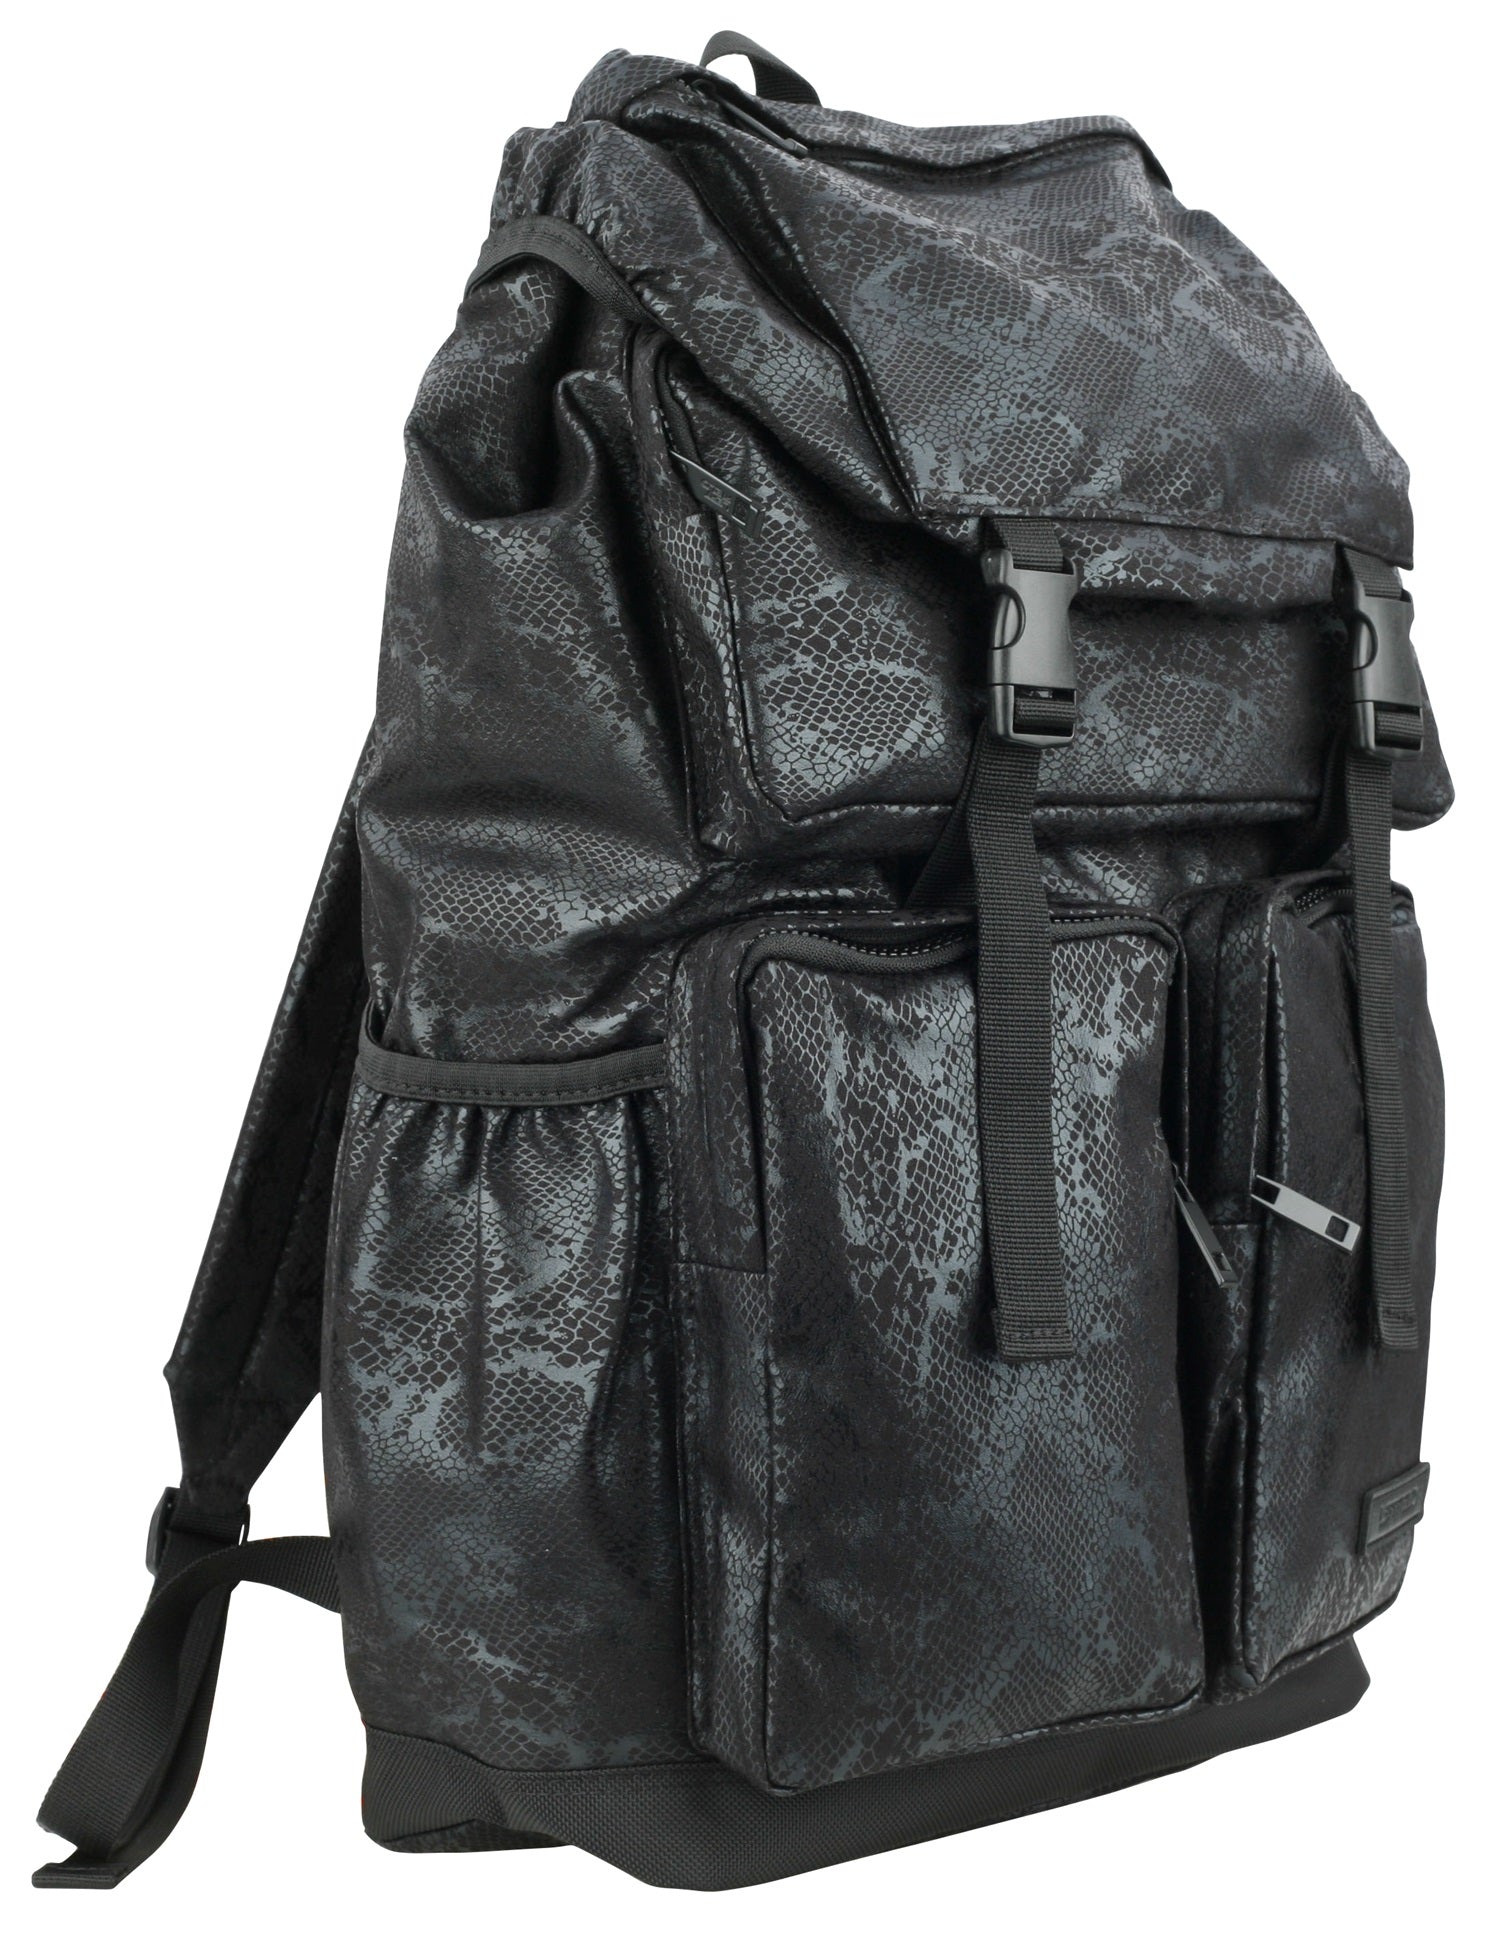 Black Snakeskin Patterned Synthetic Leather Backpacks Rucksacks